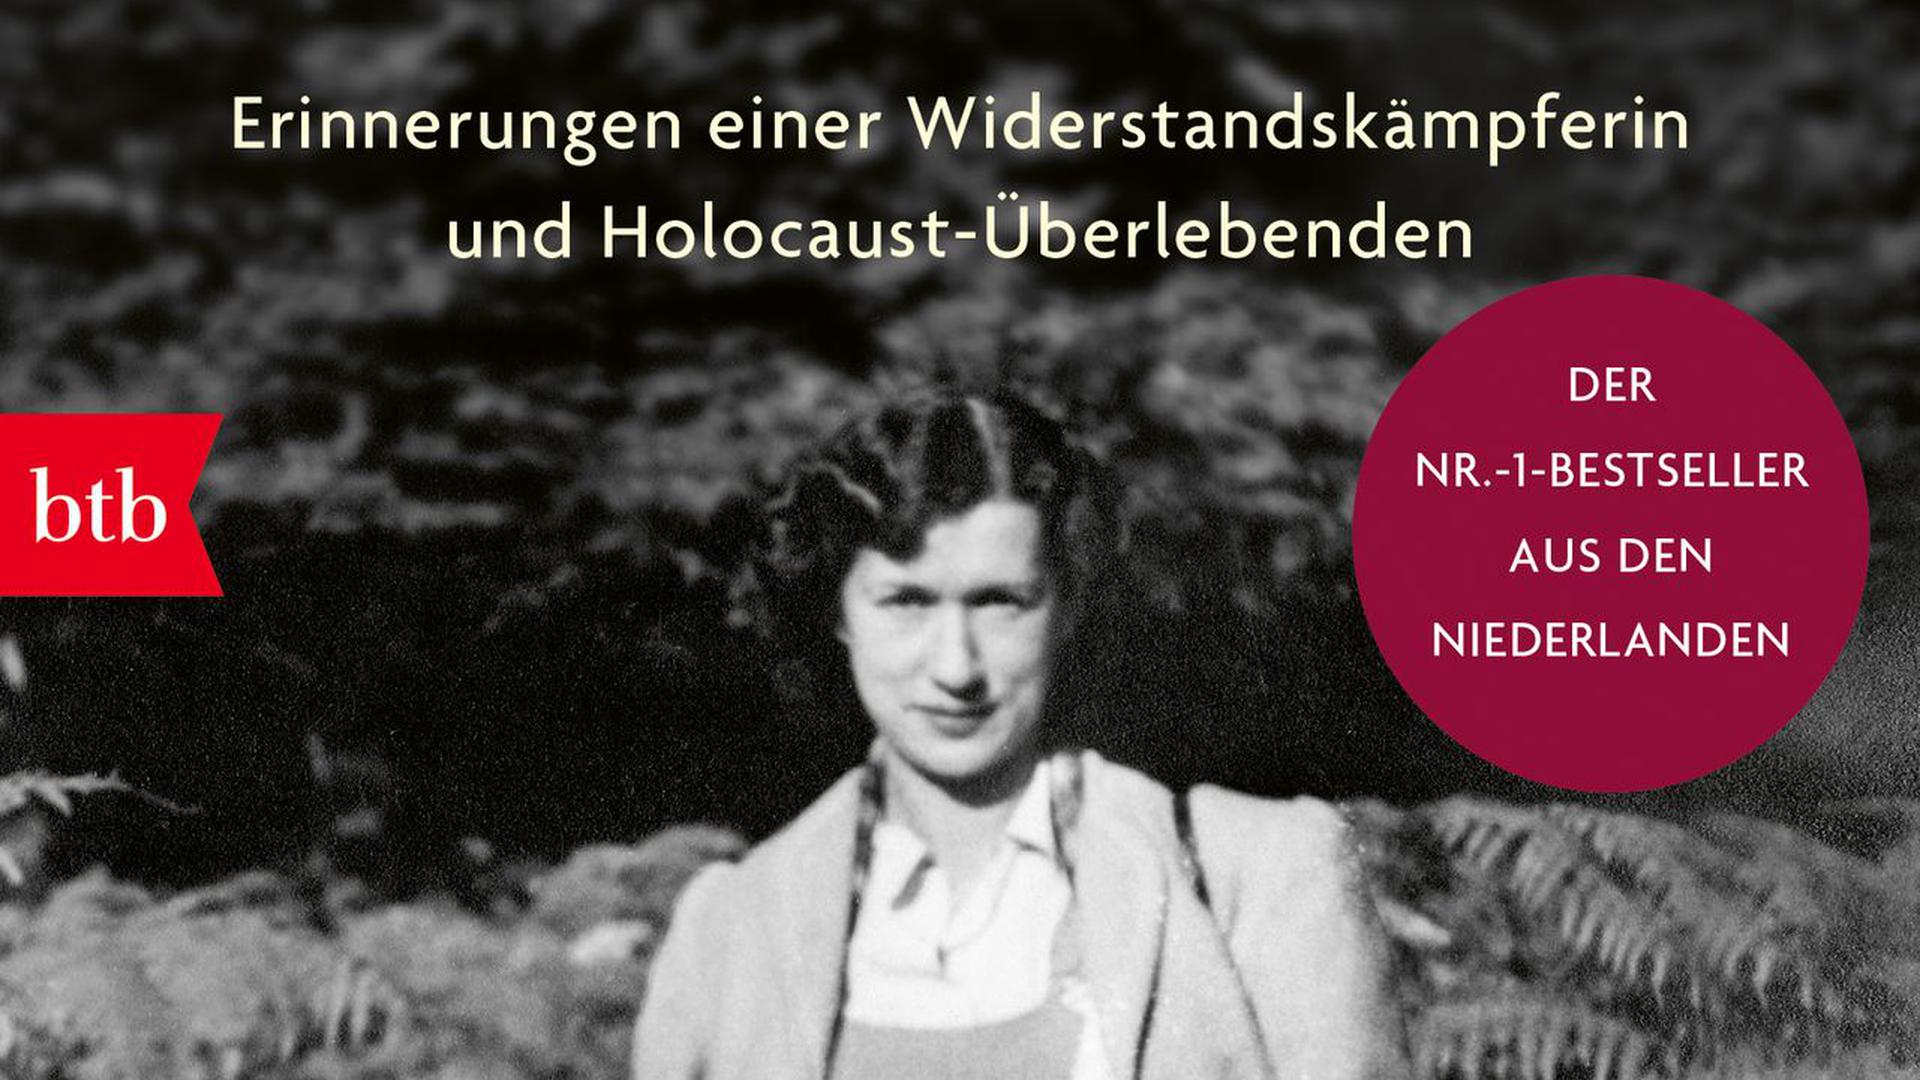 Selma van de Perre war Widerstandskämpferin. Sie erinnert sich in einem Buch an die NS-Zeit.